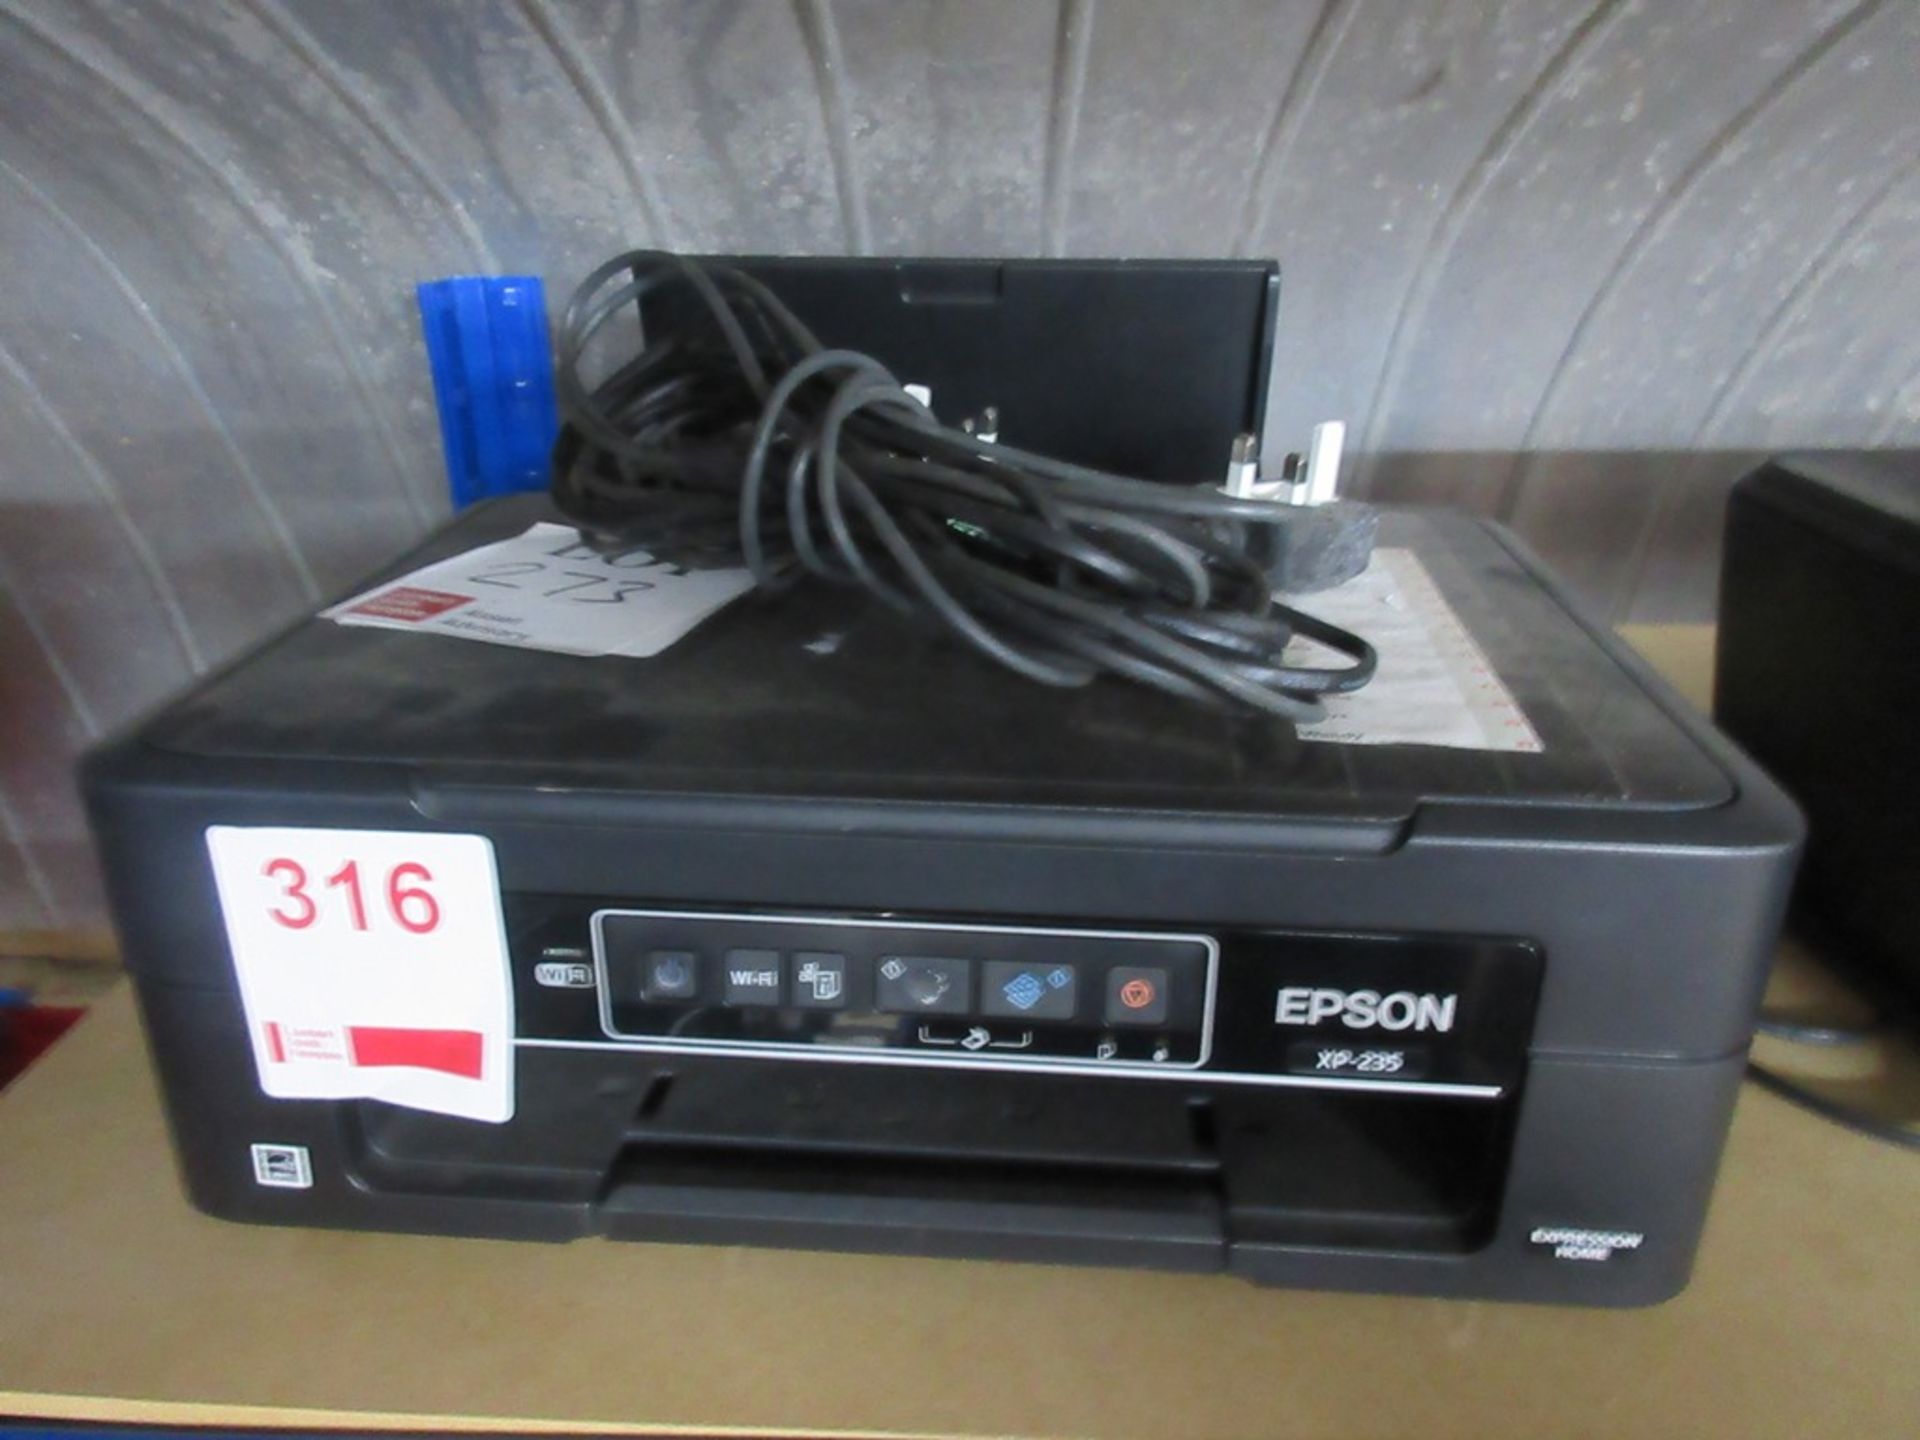 Epson XP-225 printer